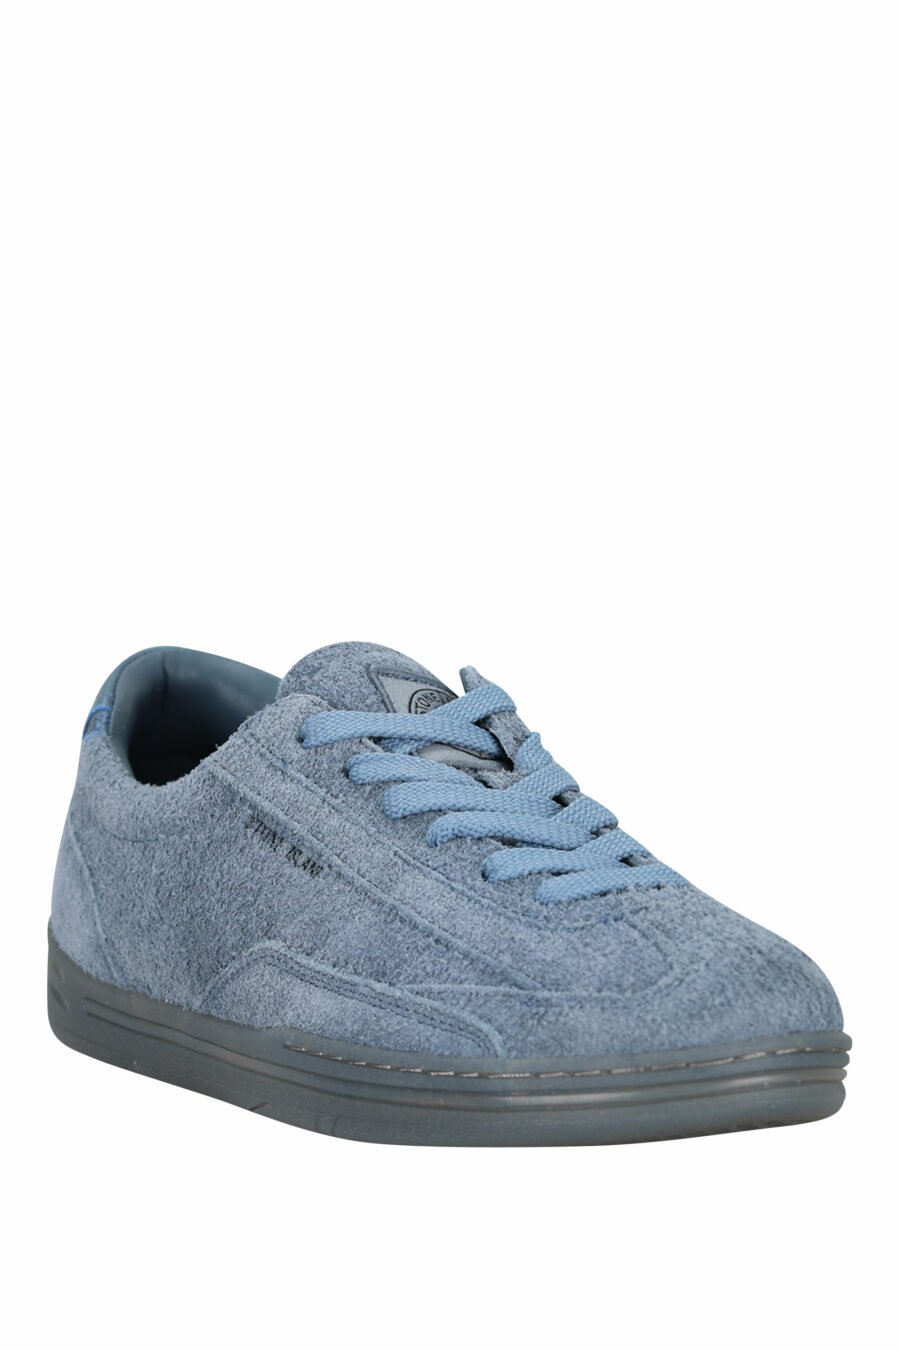 Zapatillas azul oscuro con minilogo y suela gris - 8052572937866 1